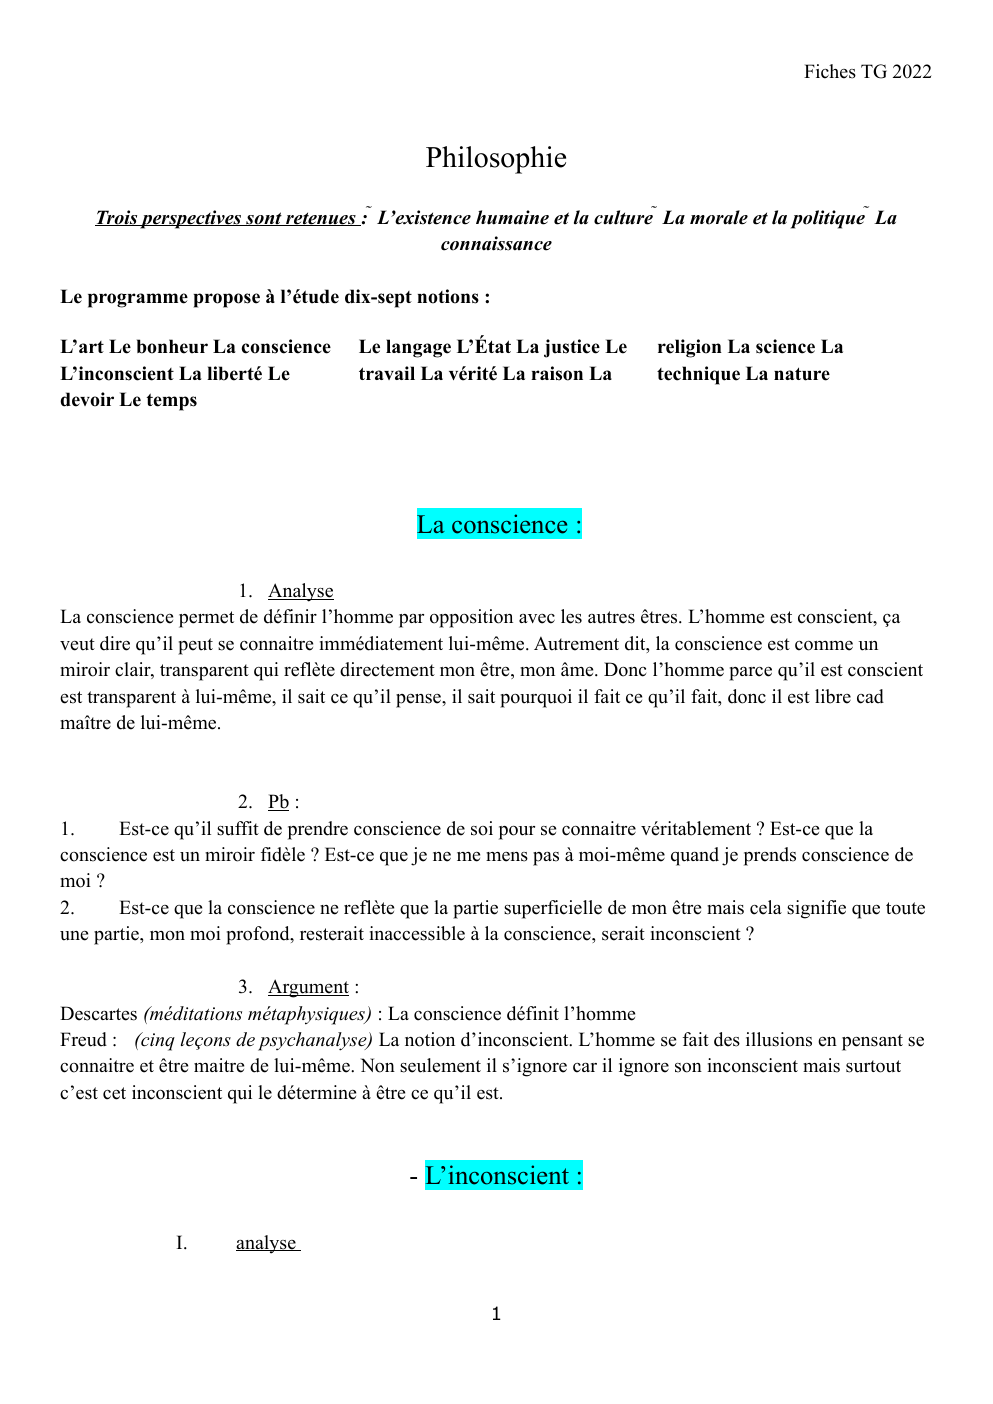 Prévisualisation du document cours de philo (notes de cours)